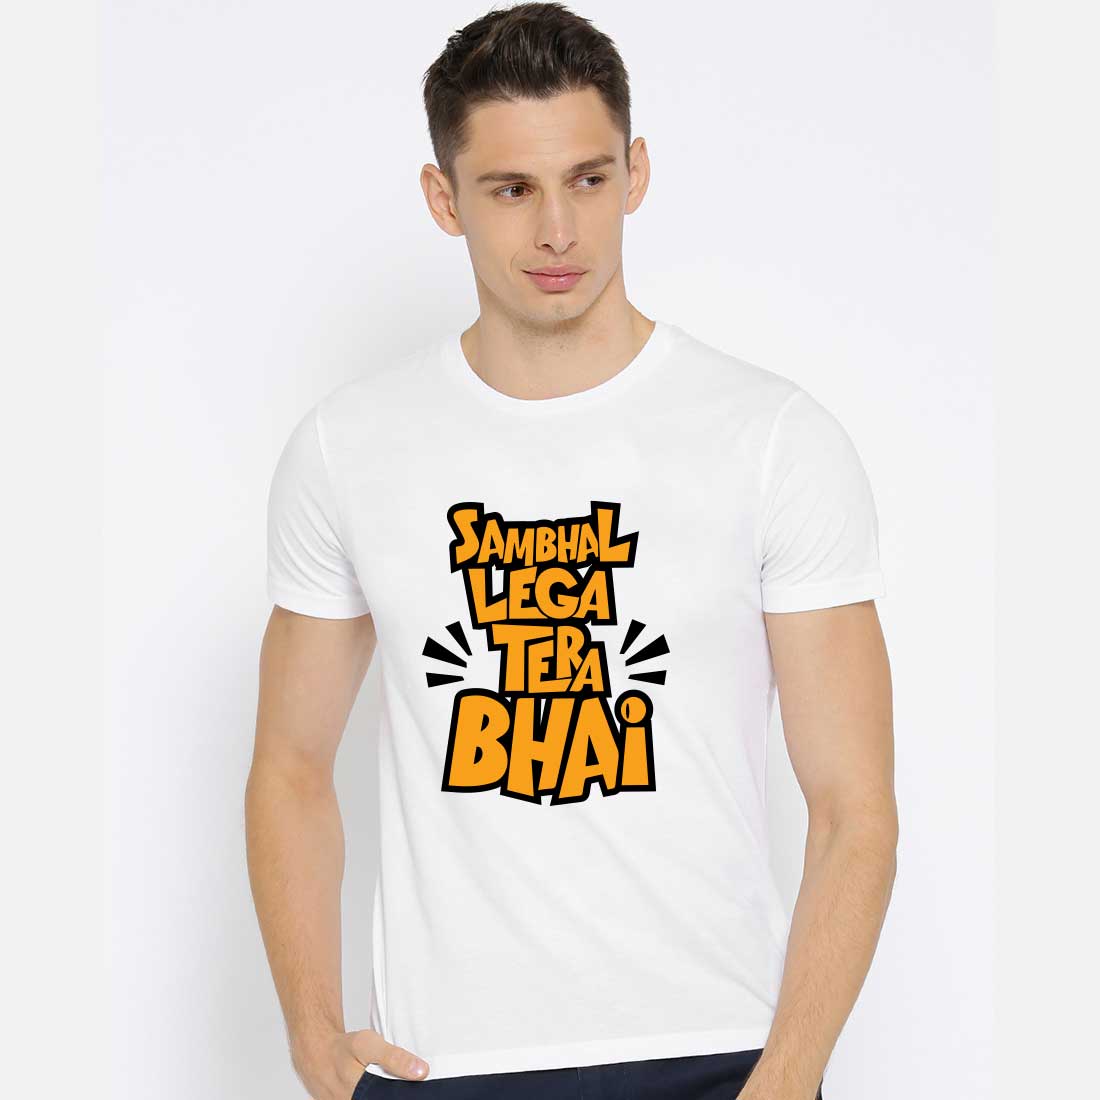 Shambhal Lega Tera Bhai White Men T-Shirt